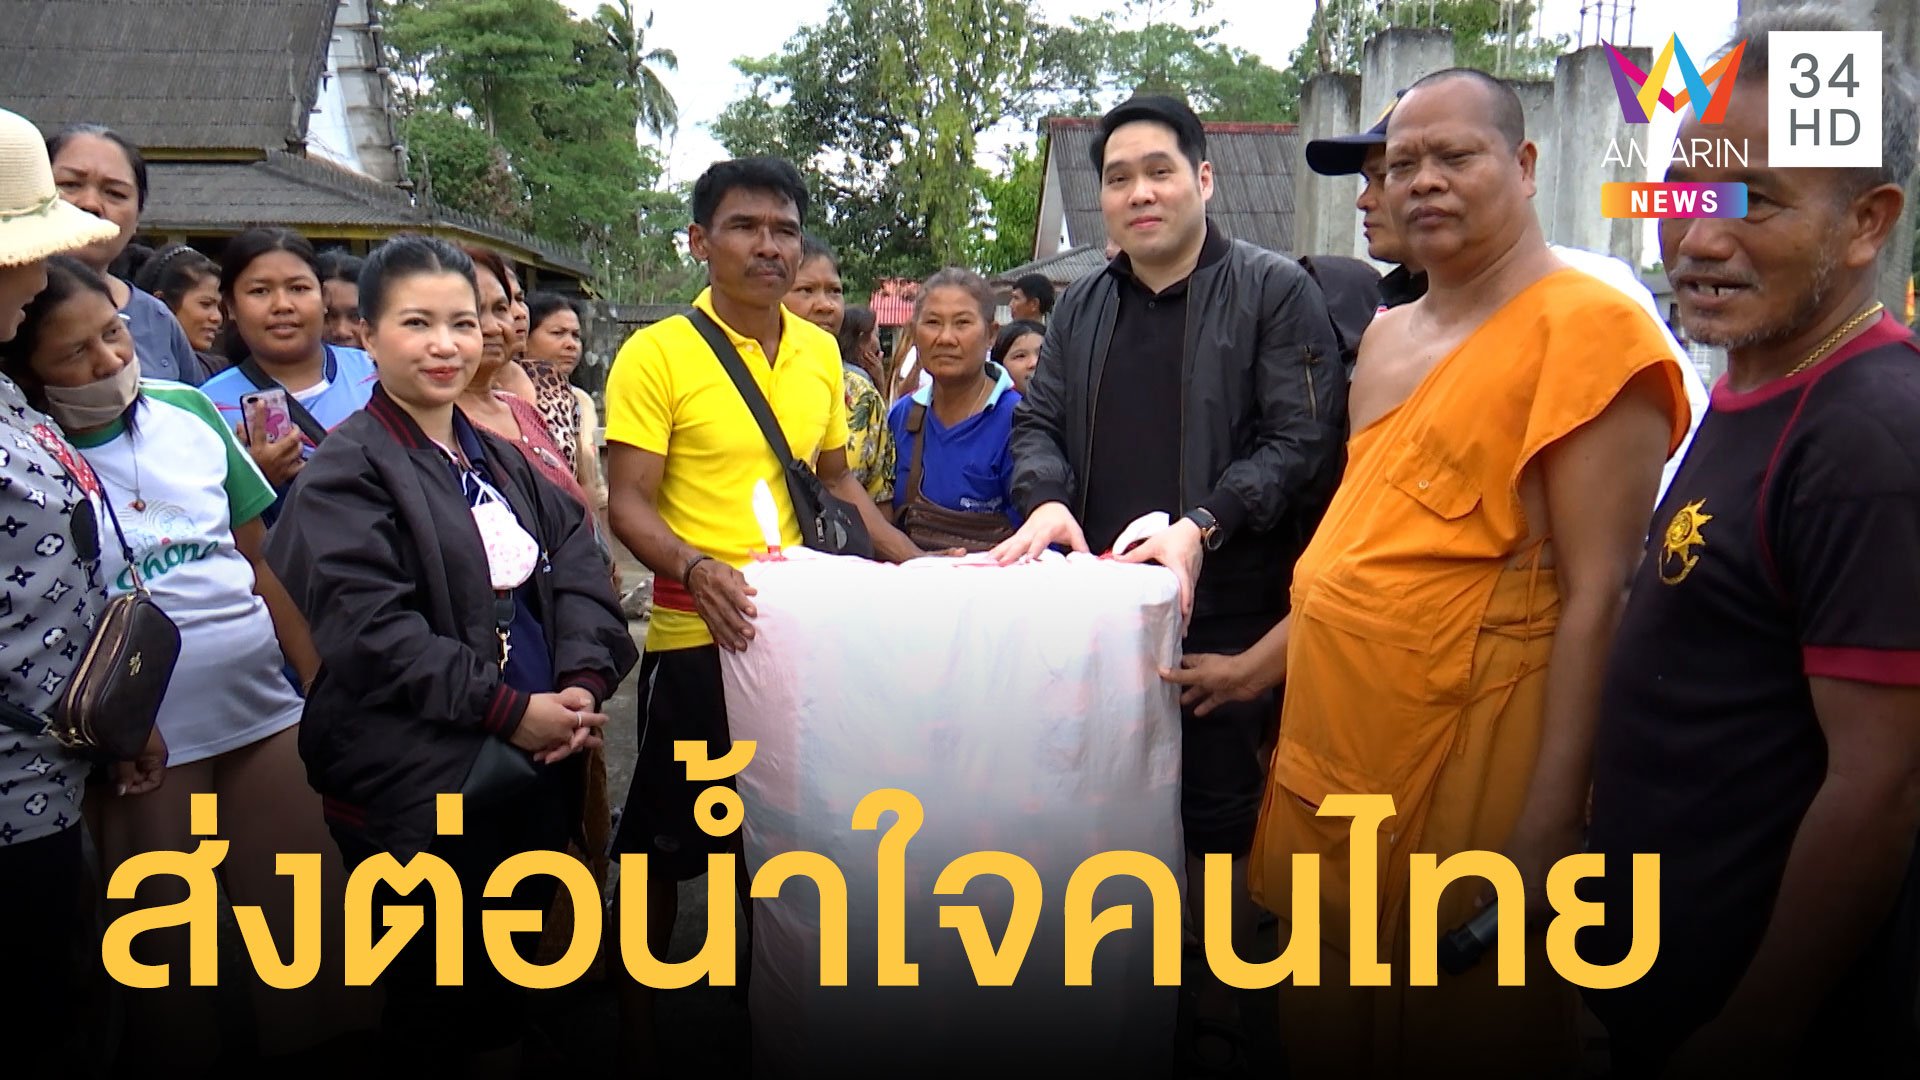 "อมรินทร์ทีวี" ส่งต่อน้ำใจคนไทย นำถุงยังชีพมอบชาวบ้าน | ข่าวอรุณอมรินทร์ | 6 ธ.ค. 63 | AMARIN TVHD34